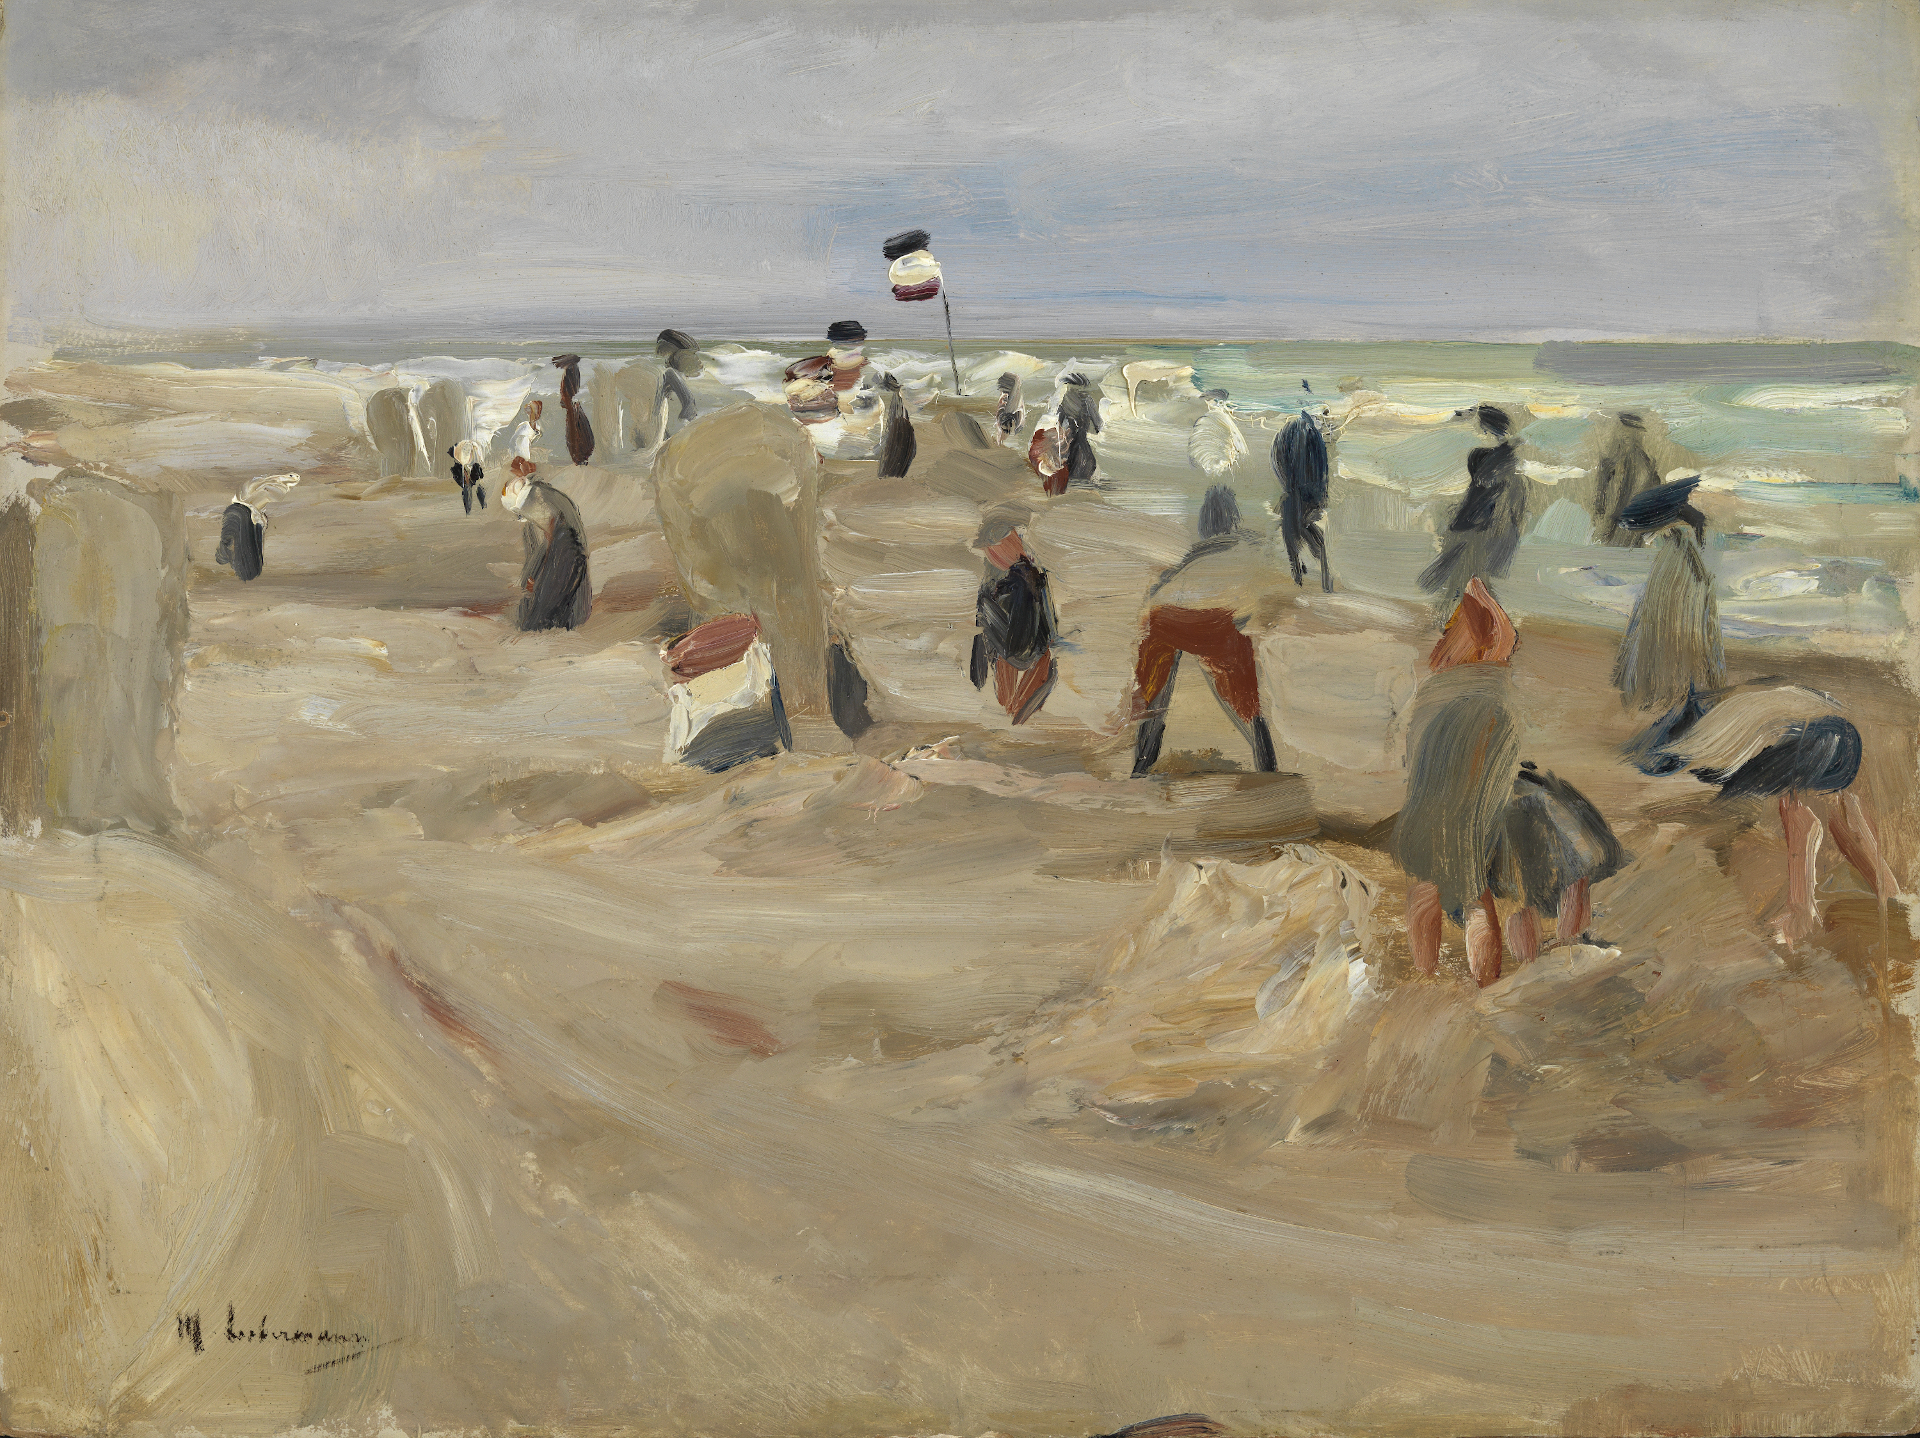 Abbildung des Werks Am Strand von Noordwijk von Max Liebermann, entstanden 1908, das in der Ausstellung Licht und Leinwand zu sehen war.